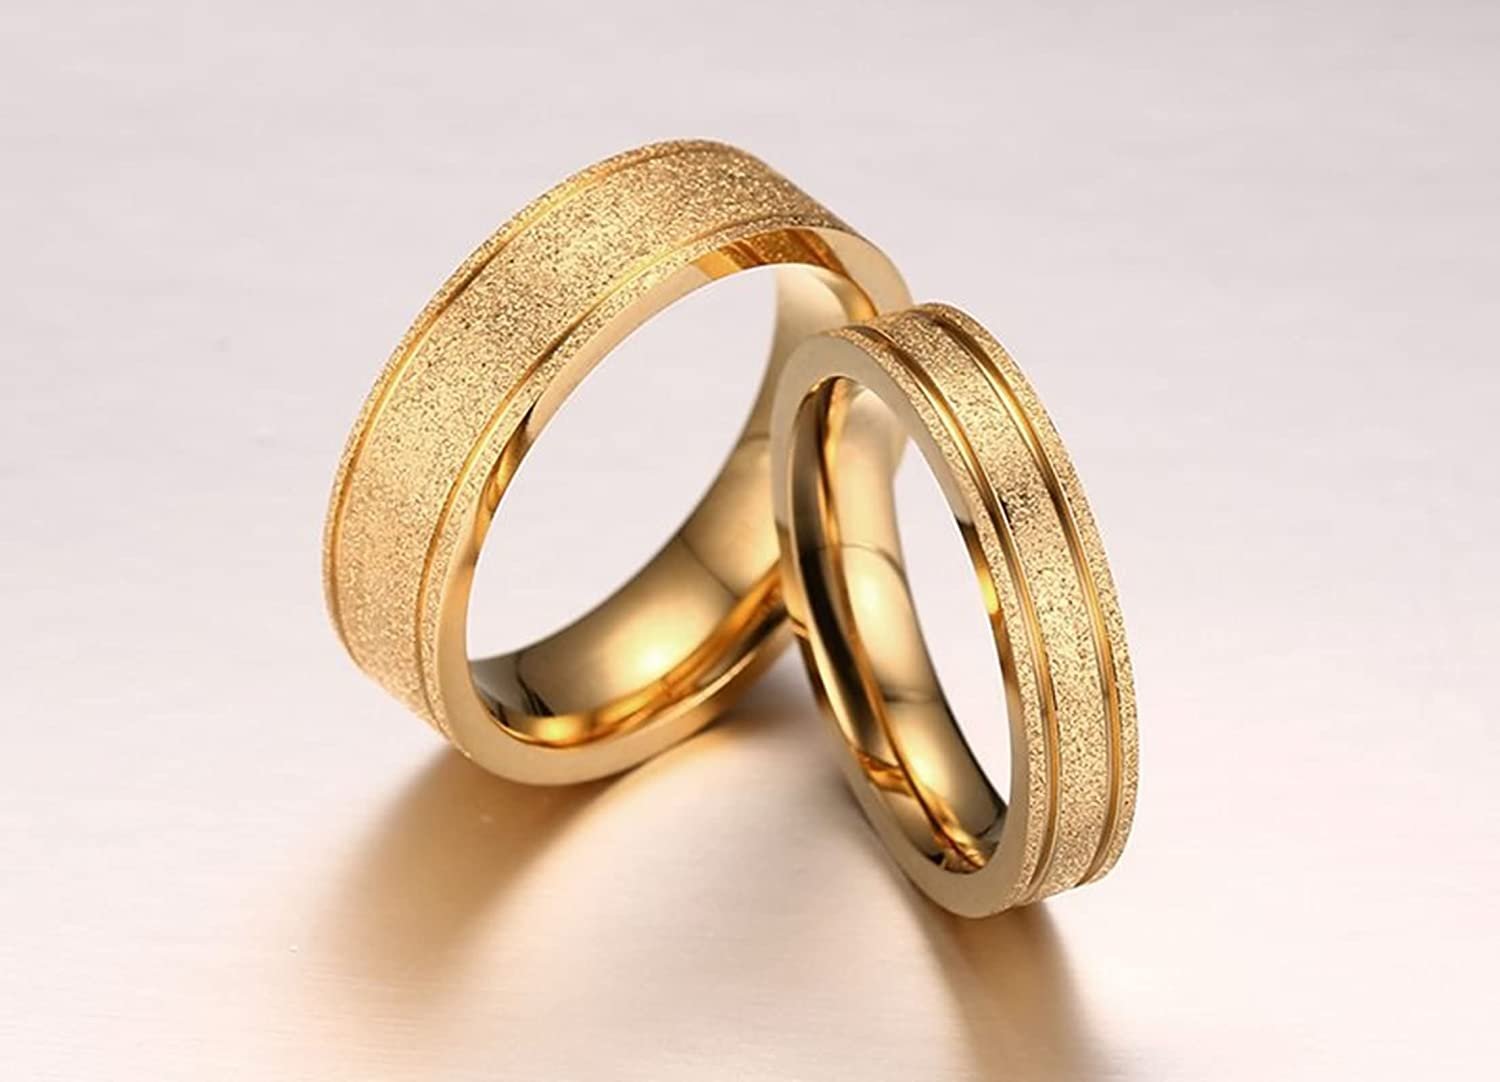 Купить недорого обручальные кольца золото. Обручальное кольцо. Обручальные кольцарные. Оригинальные обручальные кольца. Красивые обручальные кольца.